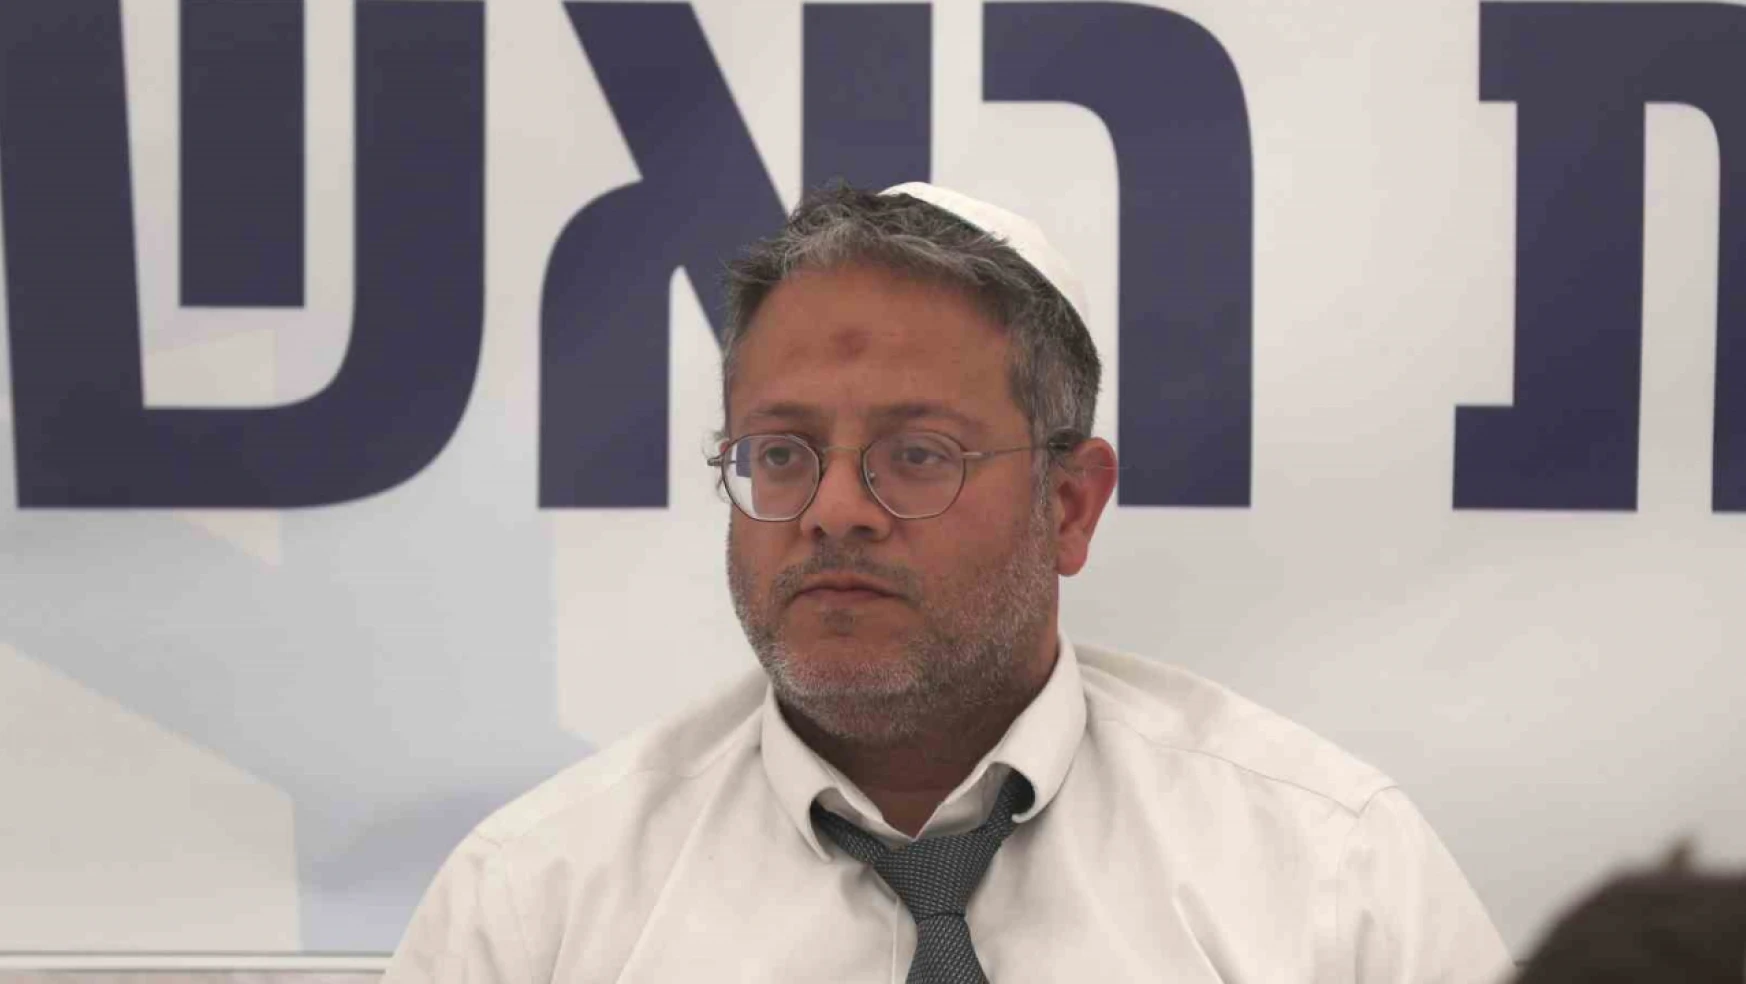 AB, İsrail'deki Avrupa Günü diplomatik resepsiyonu aşırı sağcı bakanın katılımı nedeniyle iptal etti